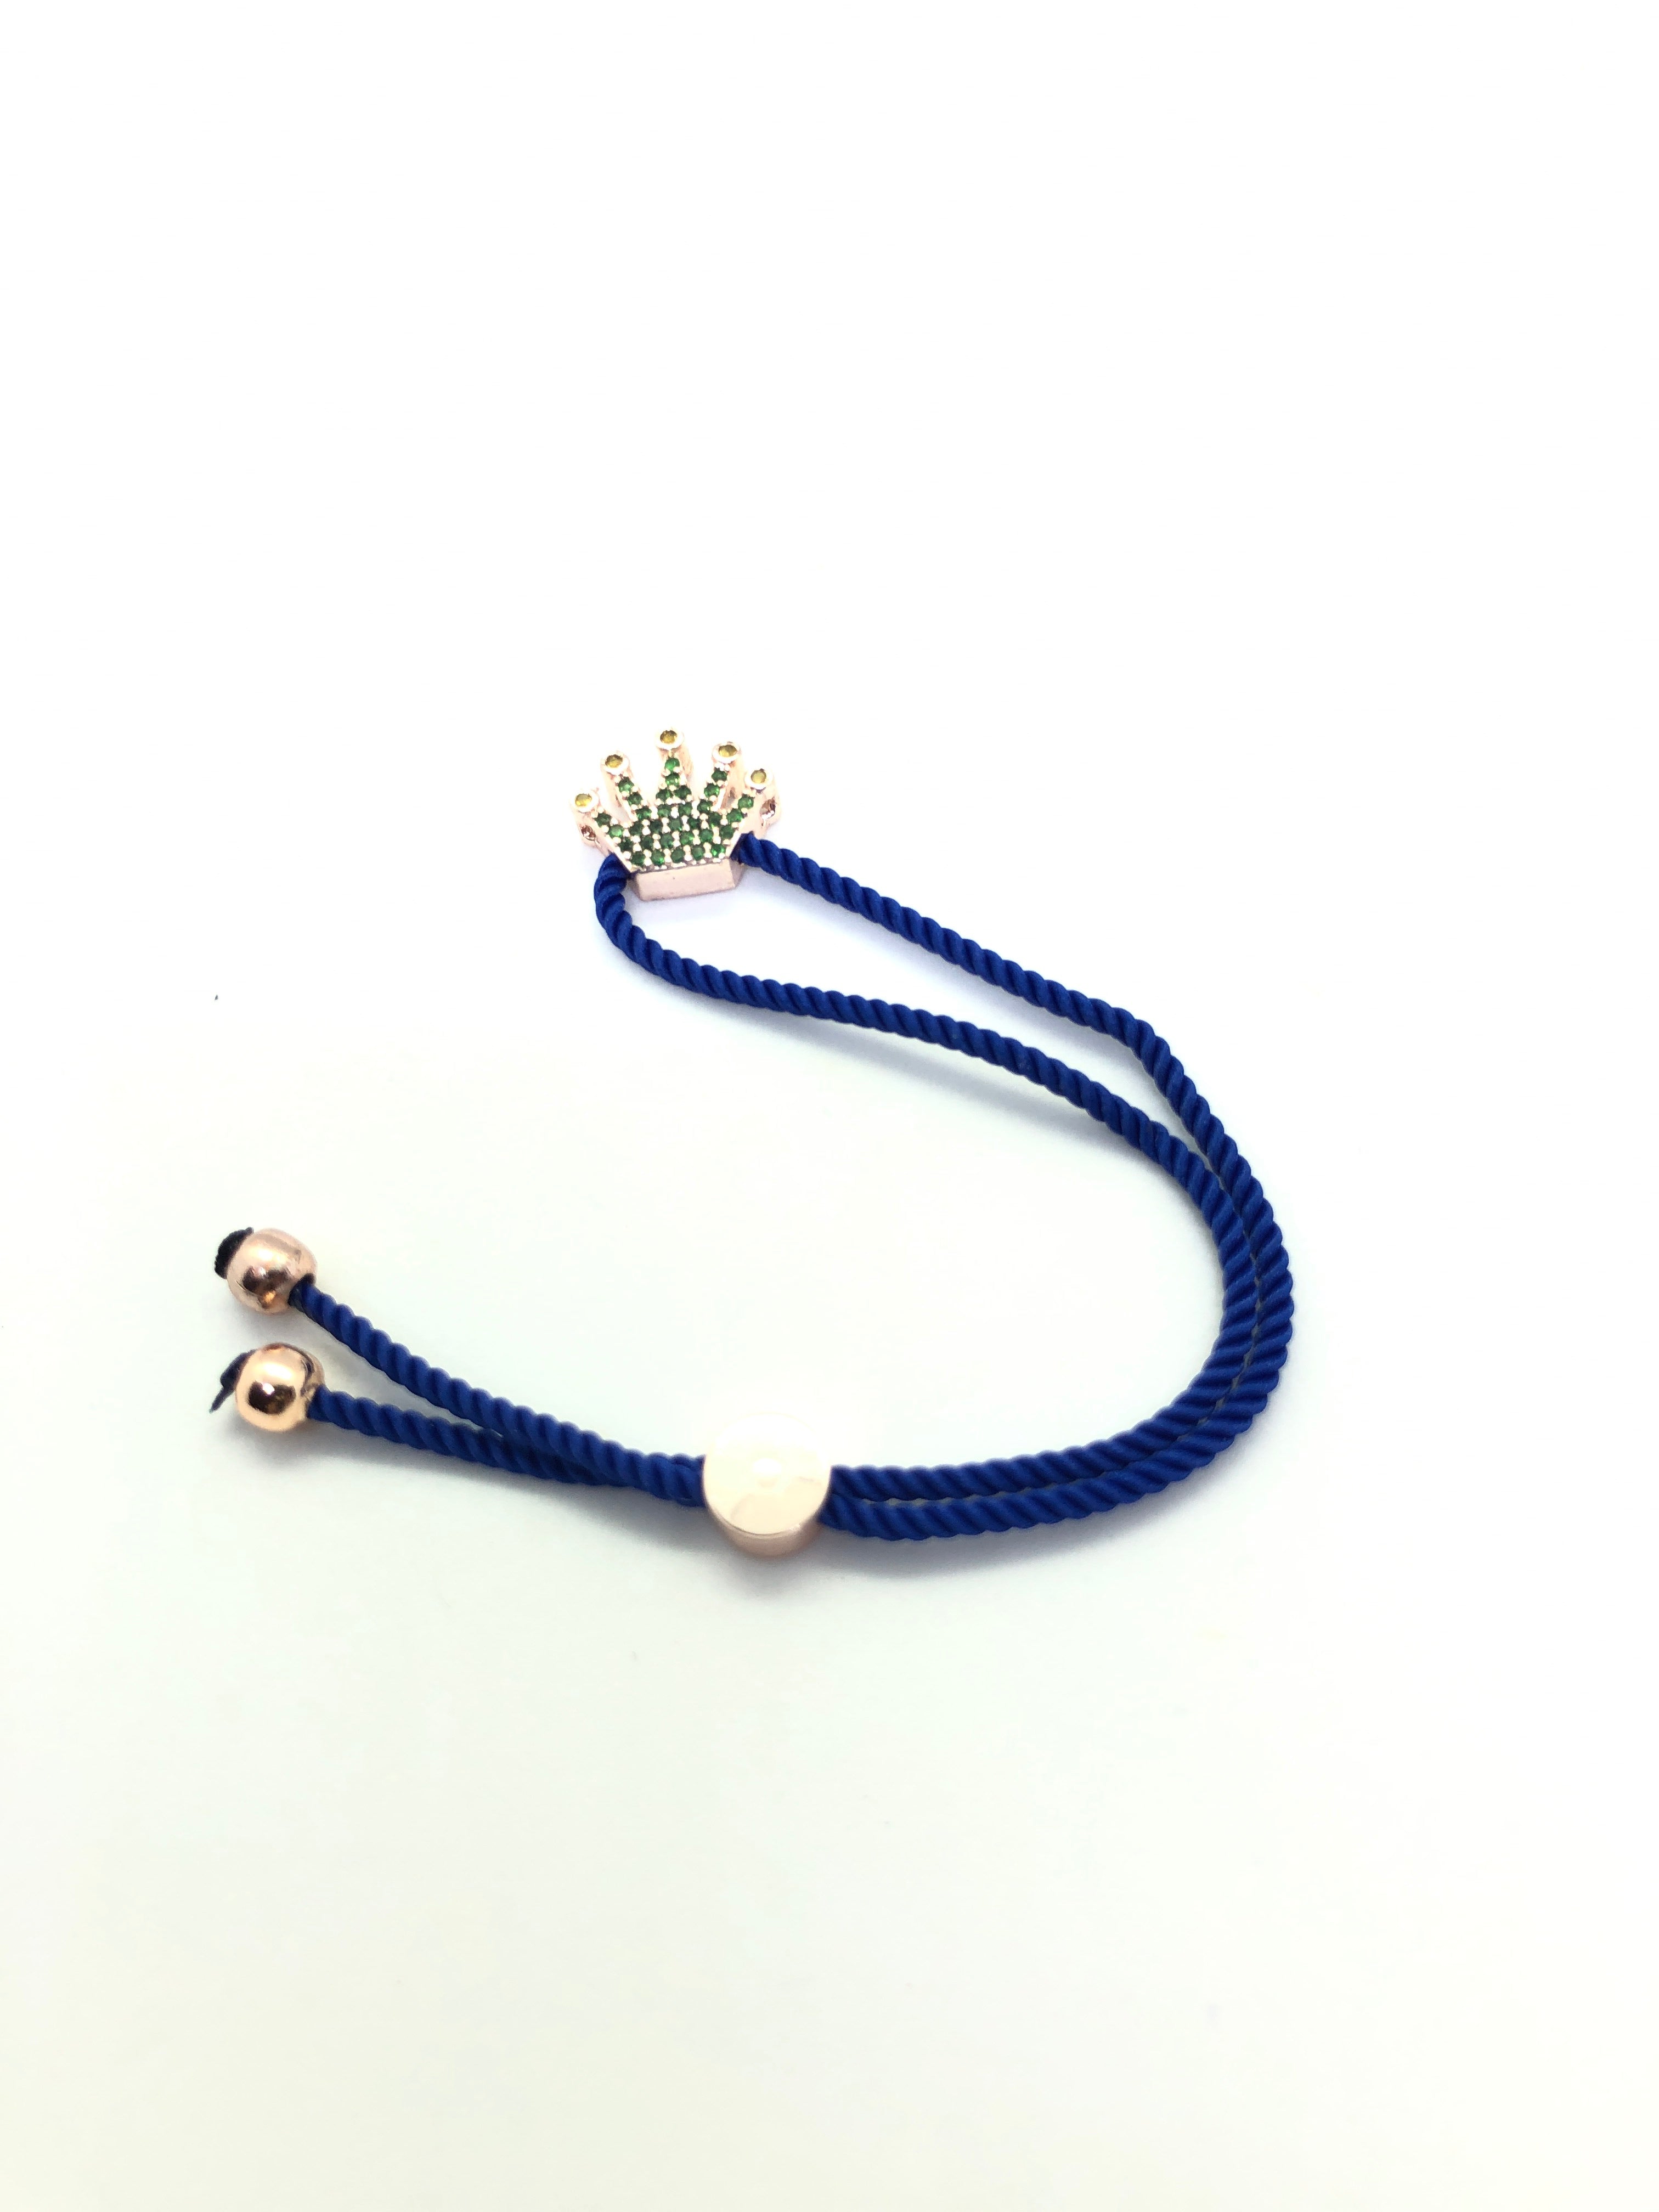 Rose Gold Crown with Dark Blue Band Bracelet